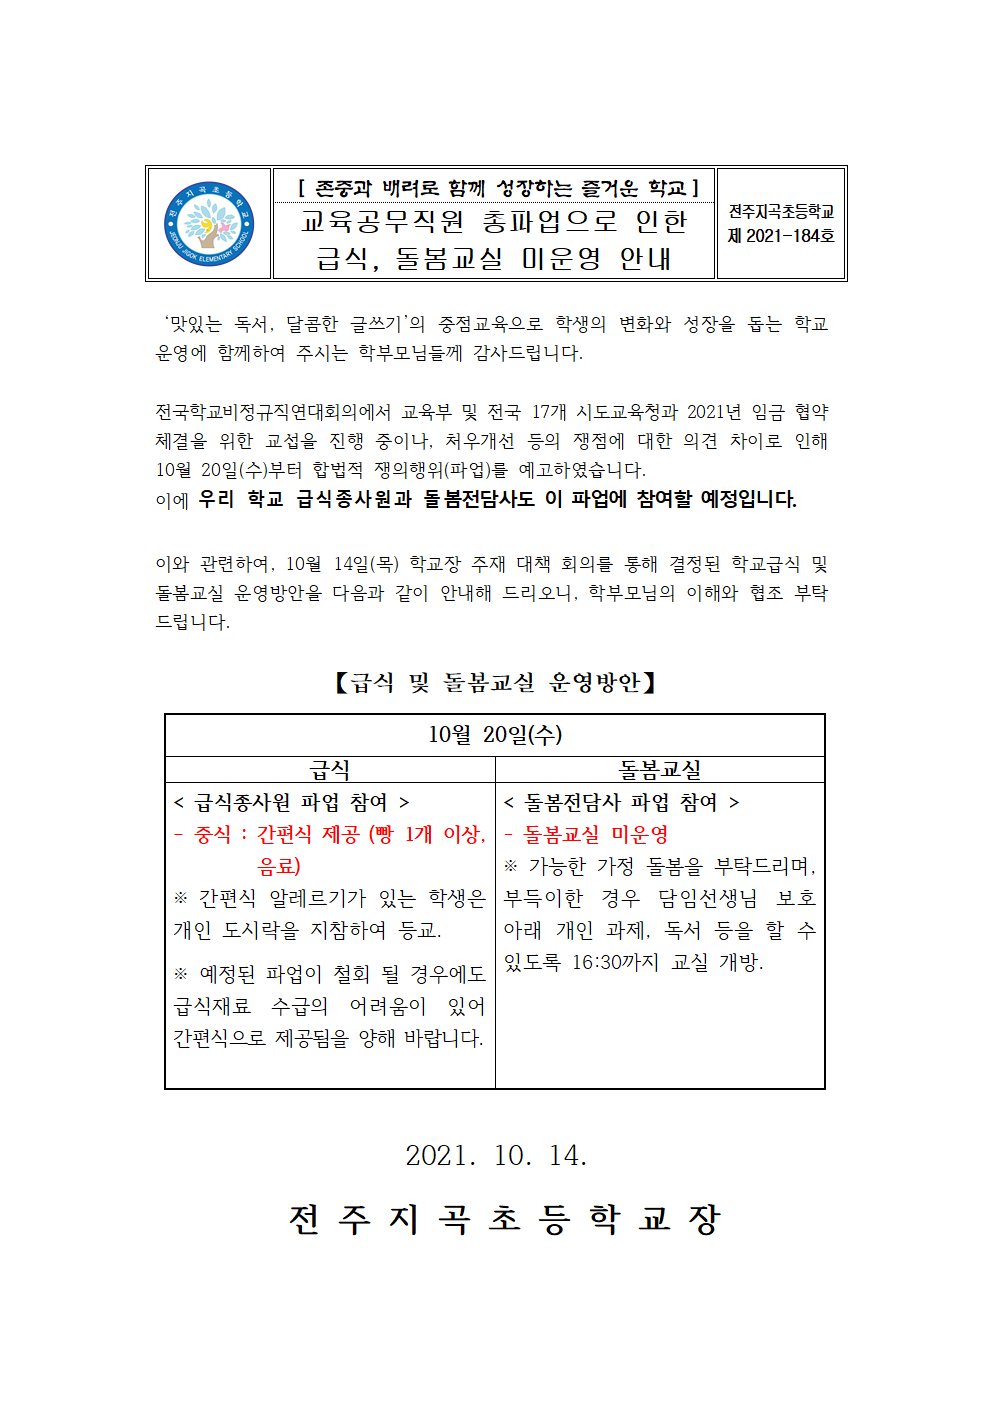 교육공무직원 파업으로 인한 급식, 돌봄교실 미운영 학부모 안내장(184호)001